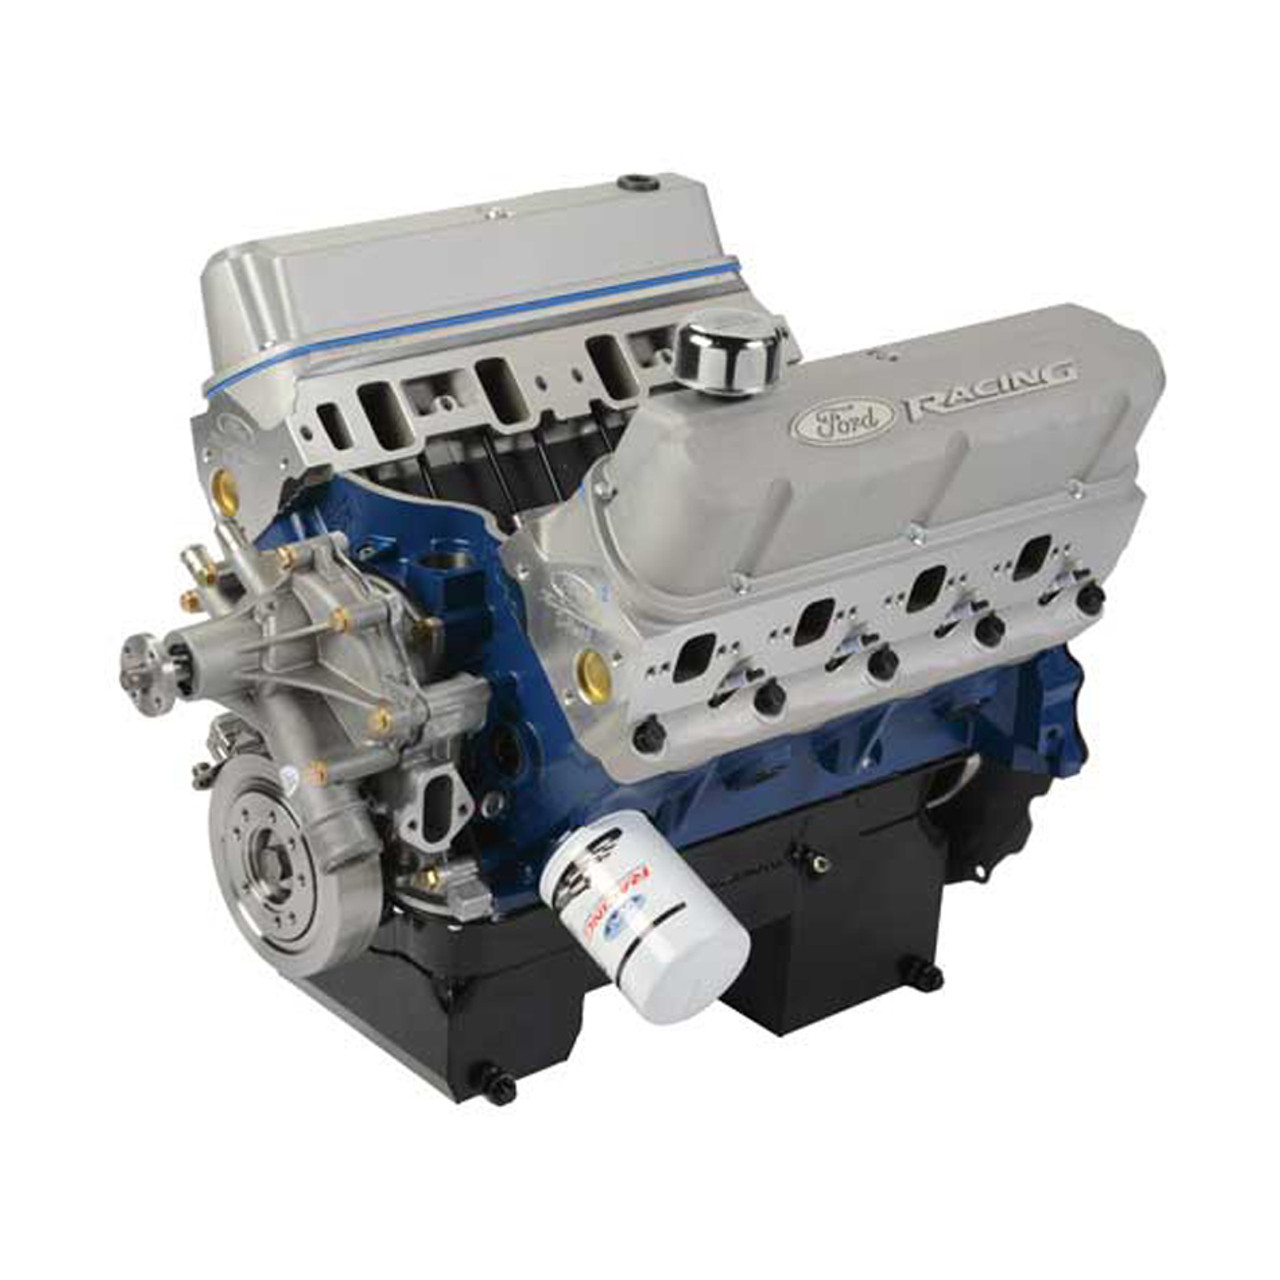 Ford 460 BBF Crate Engine W/Rear Sump - FRDM6007-Z460FRT